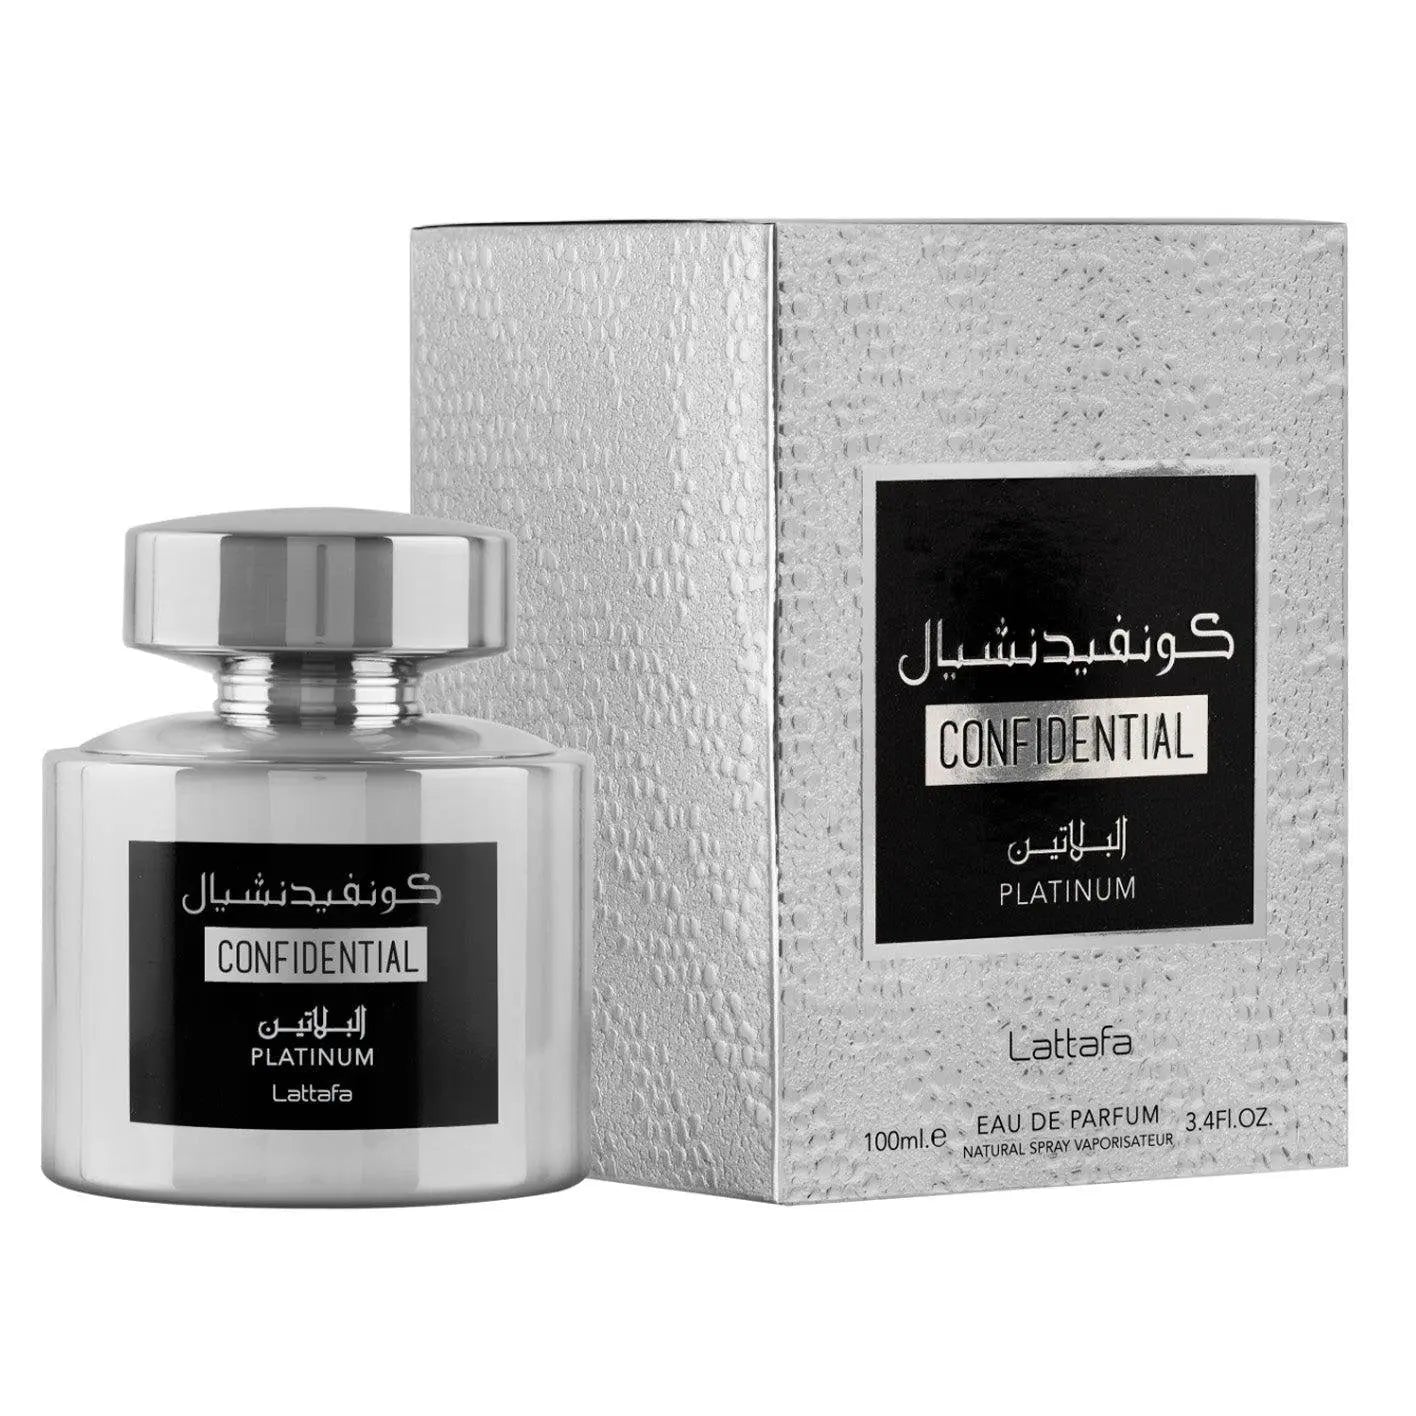 Confidential Platinum Perfume 100ml EDP Lattafa